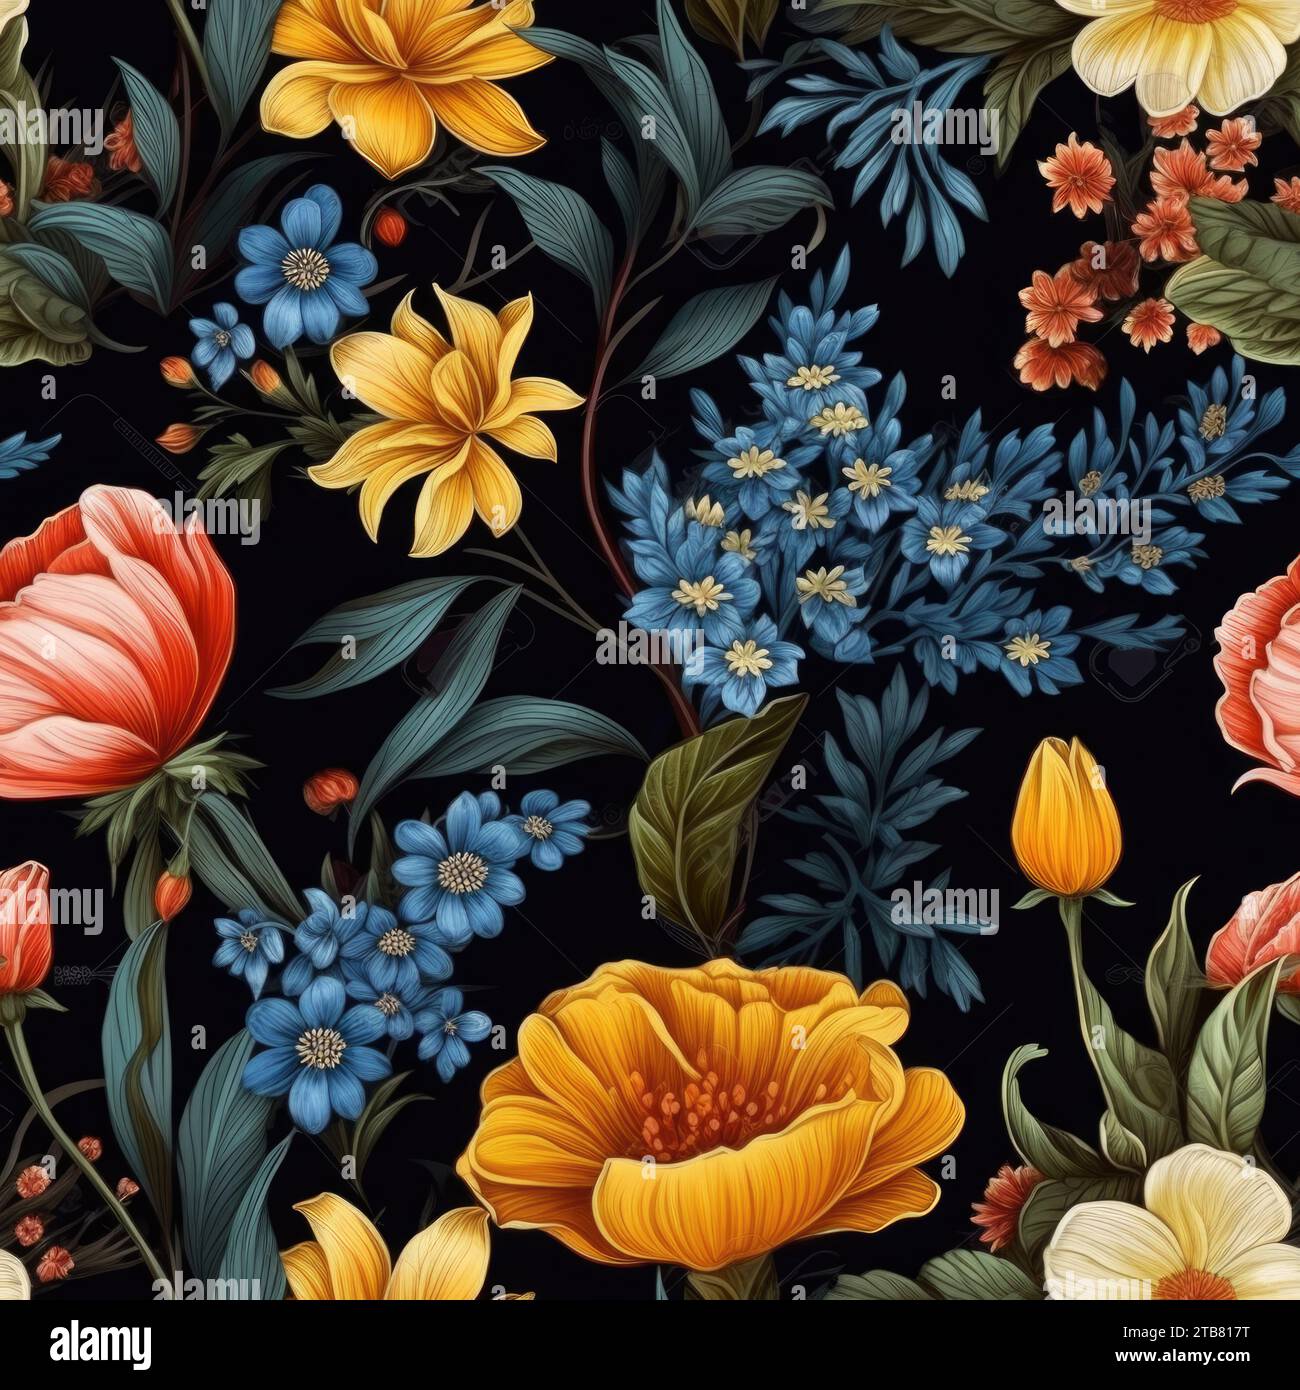 Questa vivace immagine presenta un vivace design floreale su uno sfondo nero Foto Stock